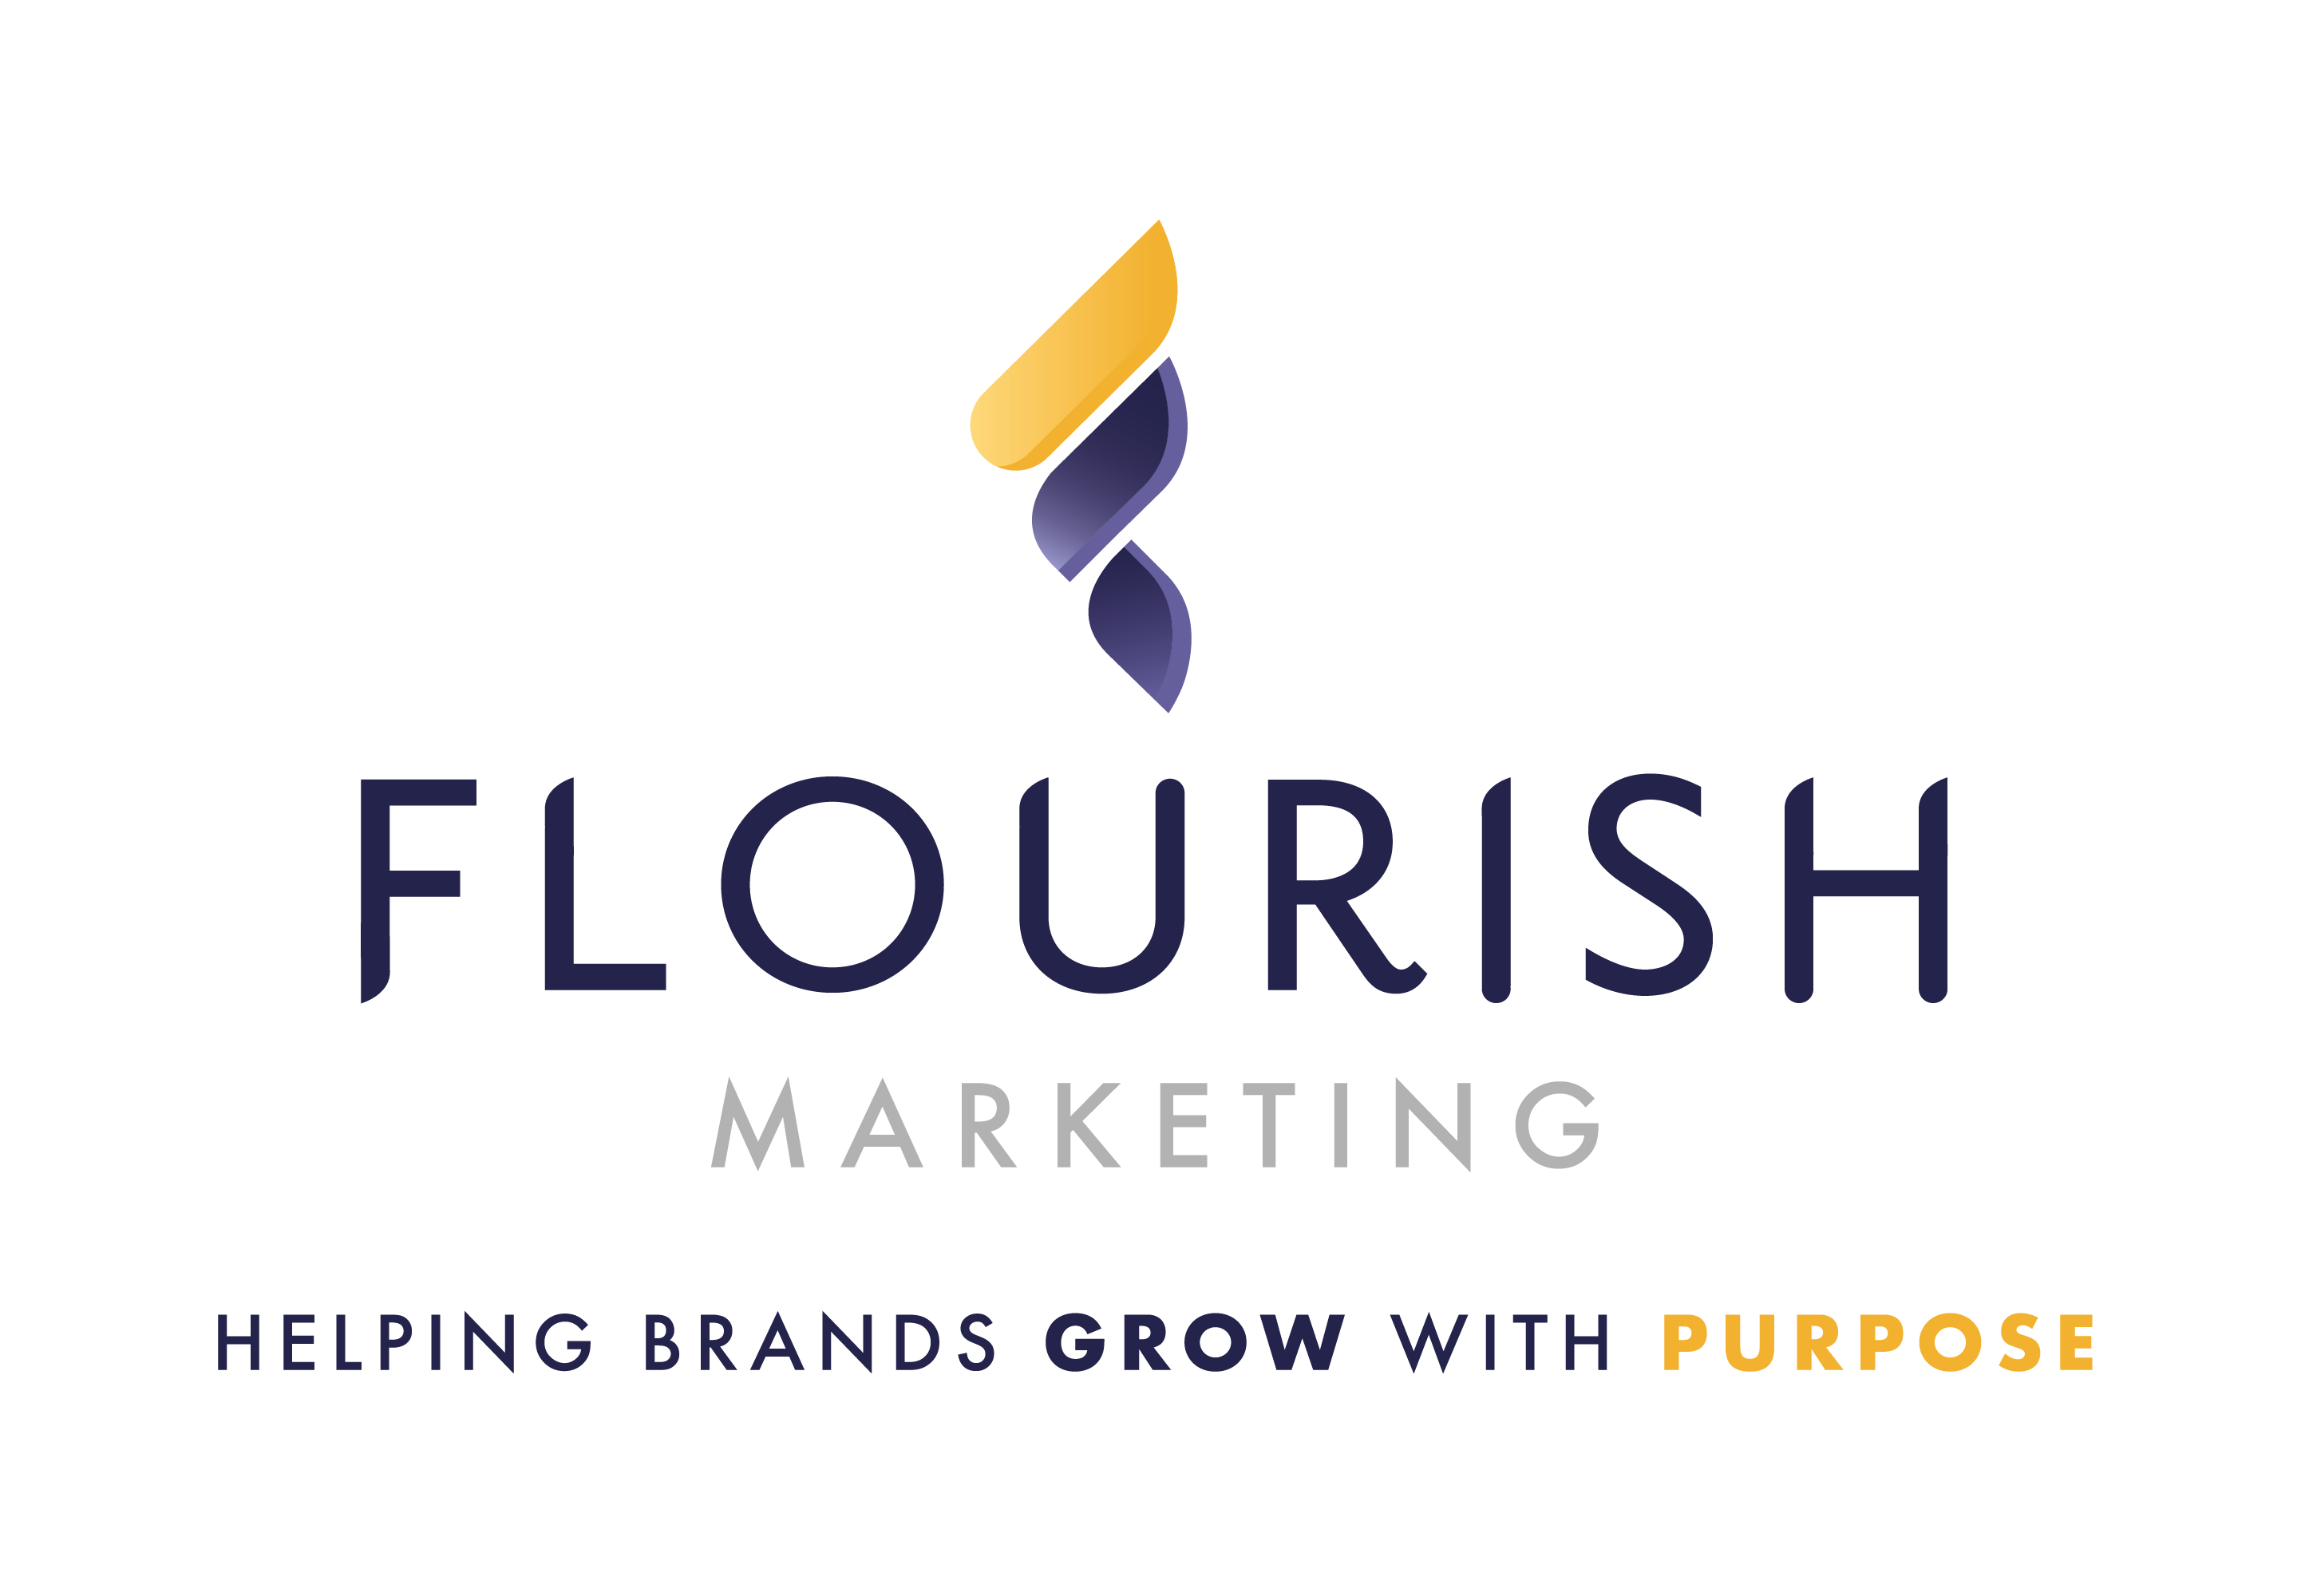 Image showing Flourish Marketing